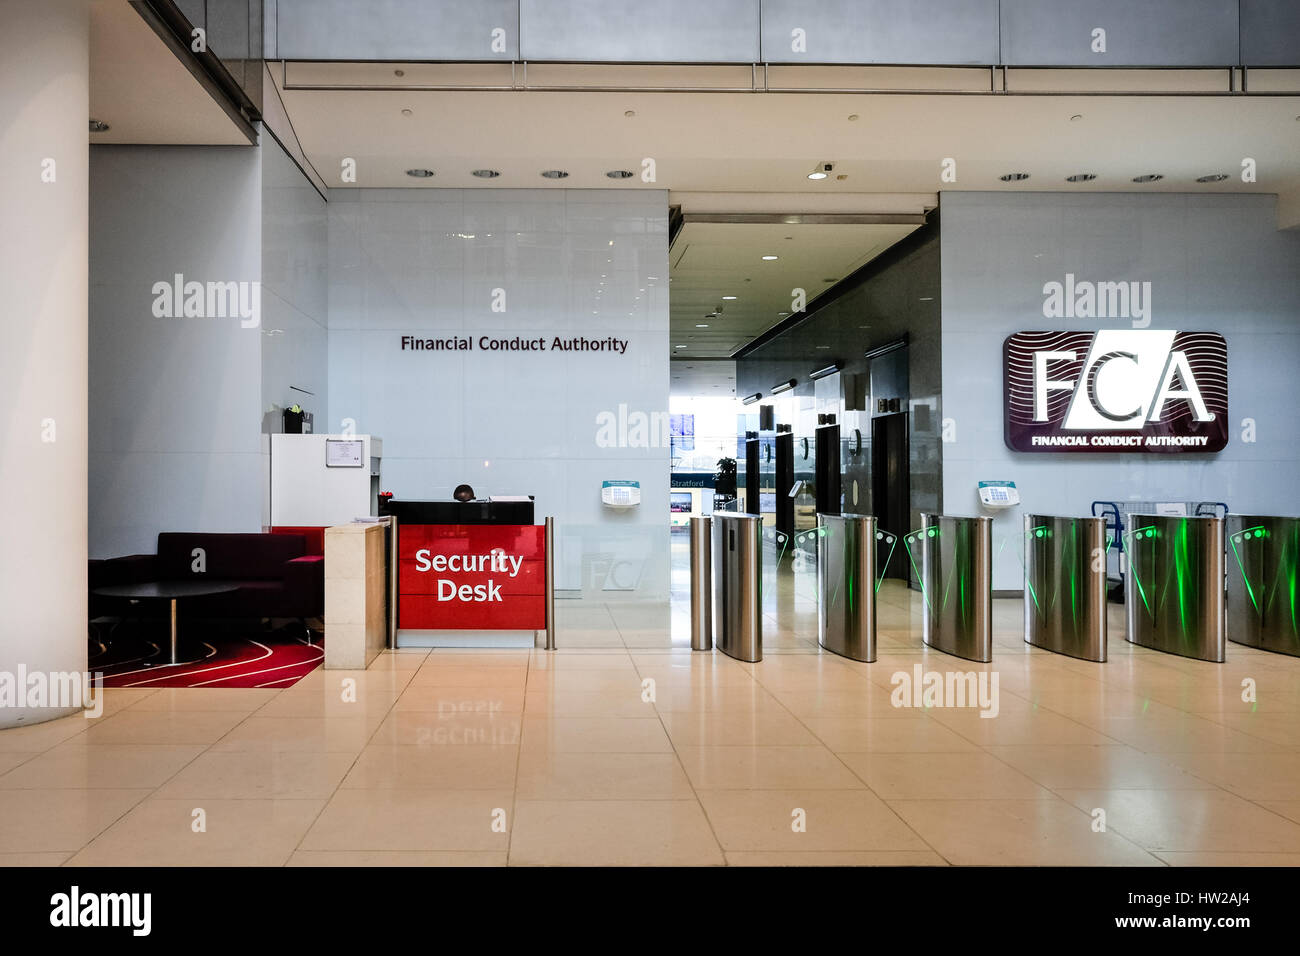 Vestíbulo de entrada del comportamiento financiero competente (FCA) Edificio en Canary Wharf, uno de los dos distritos financieros de Londres. Foto de stock